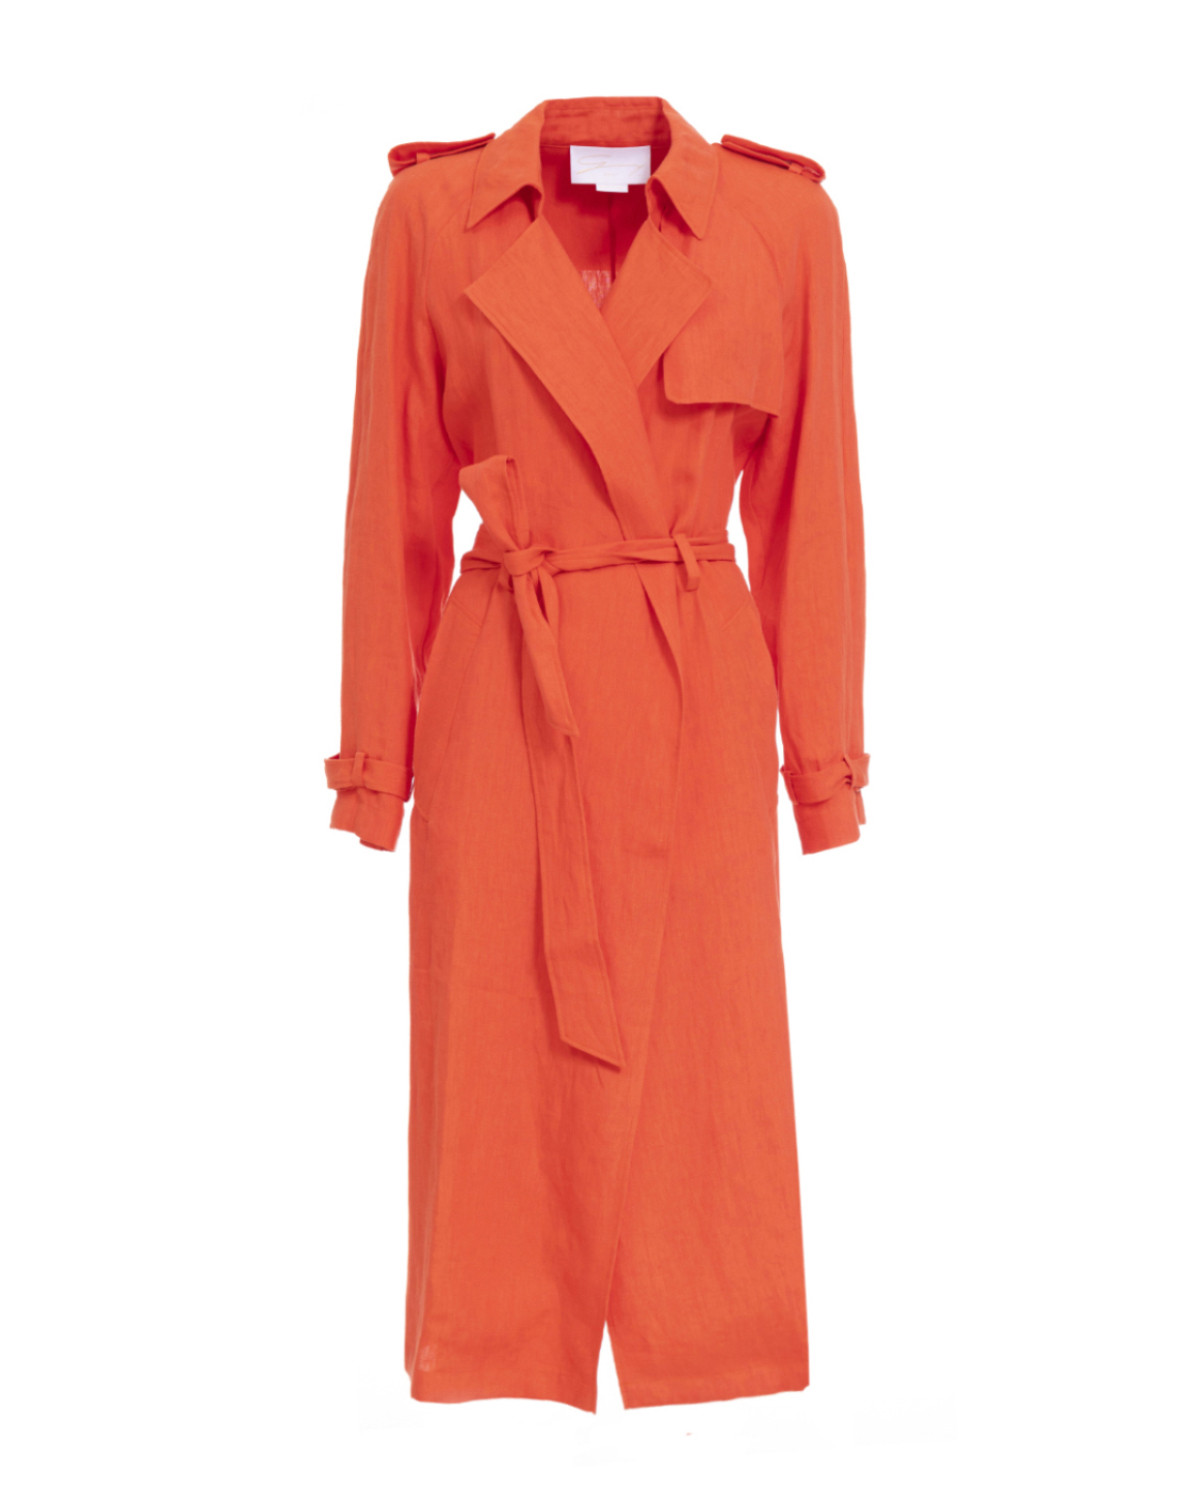 Orange linen trench coat